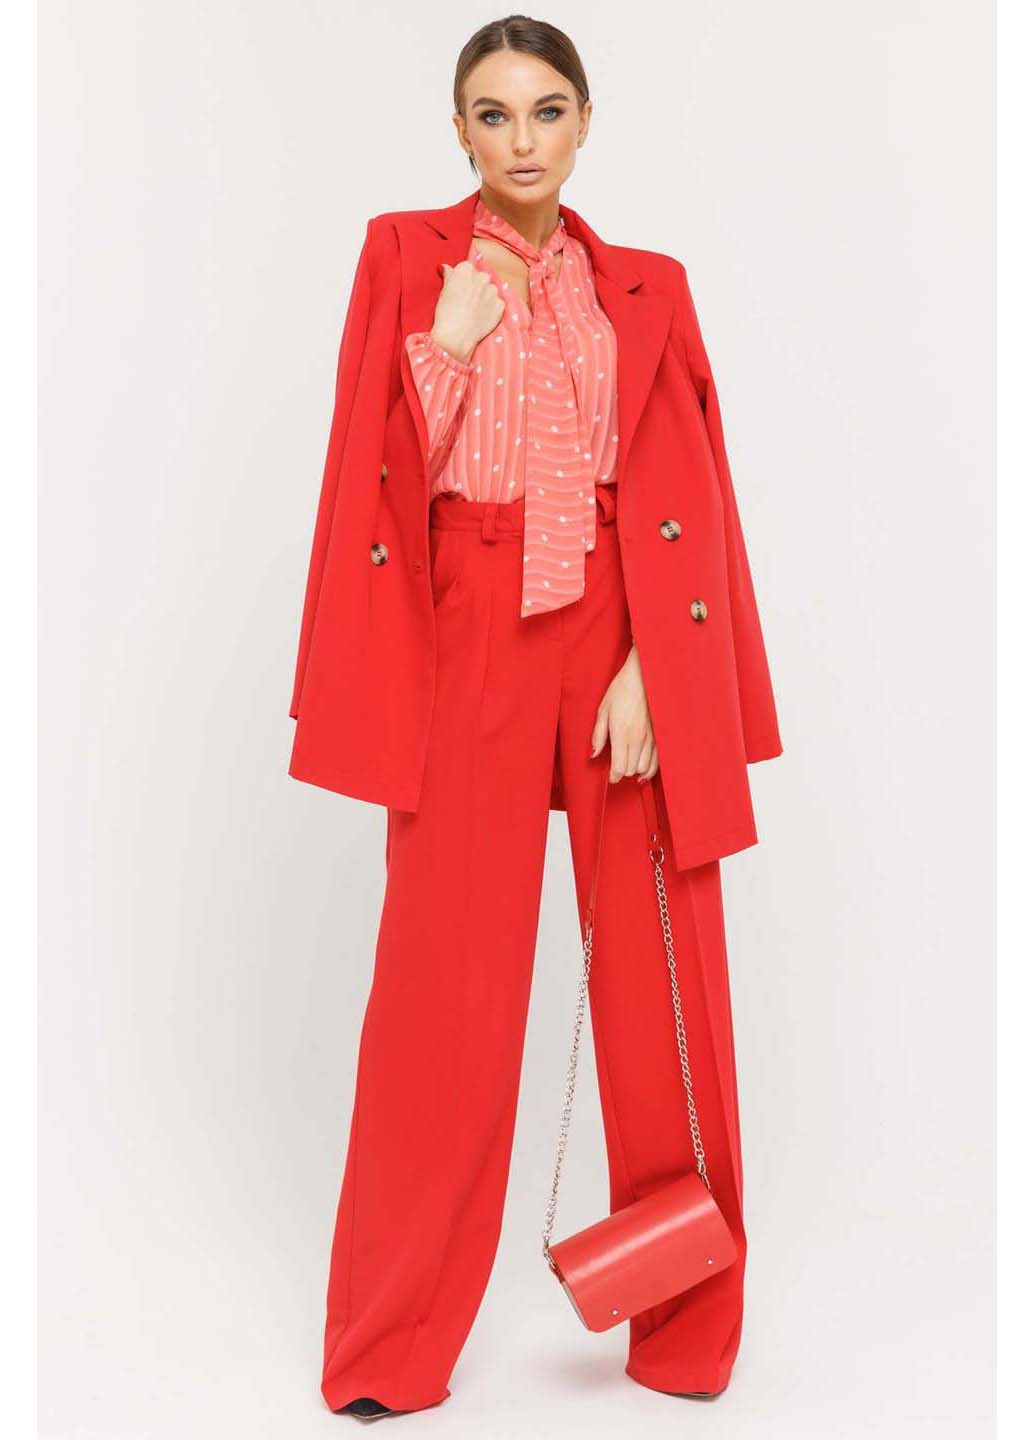 Красный женский пиджак Ри Мари - демисезонный